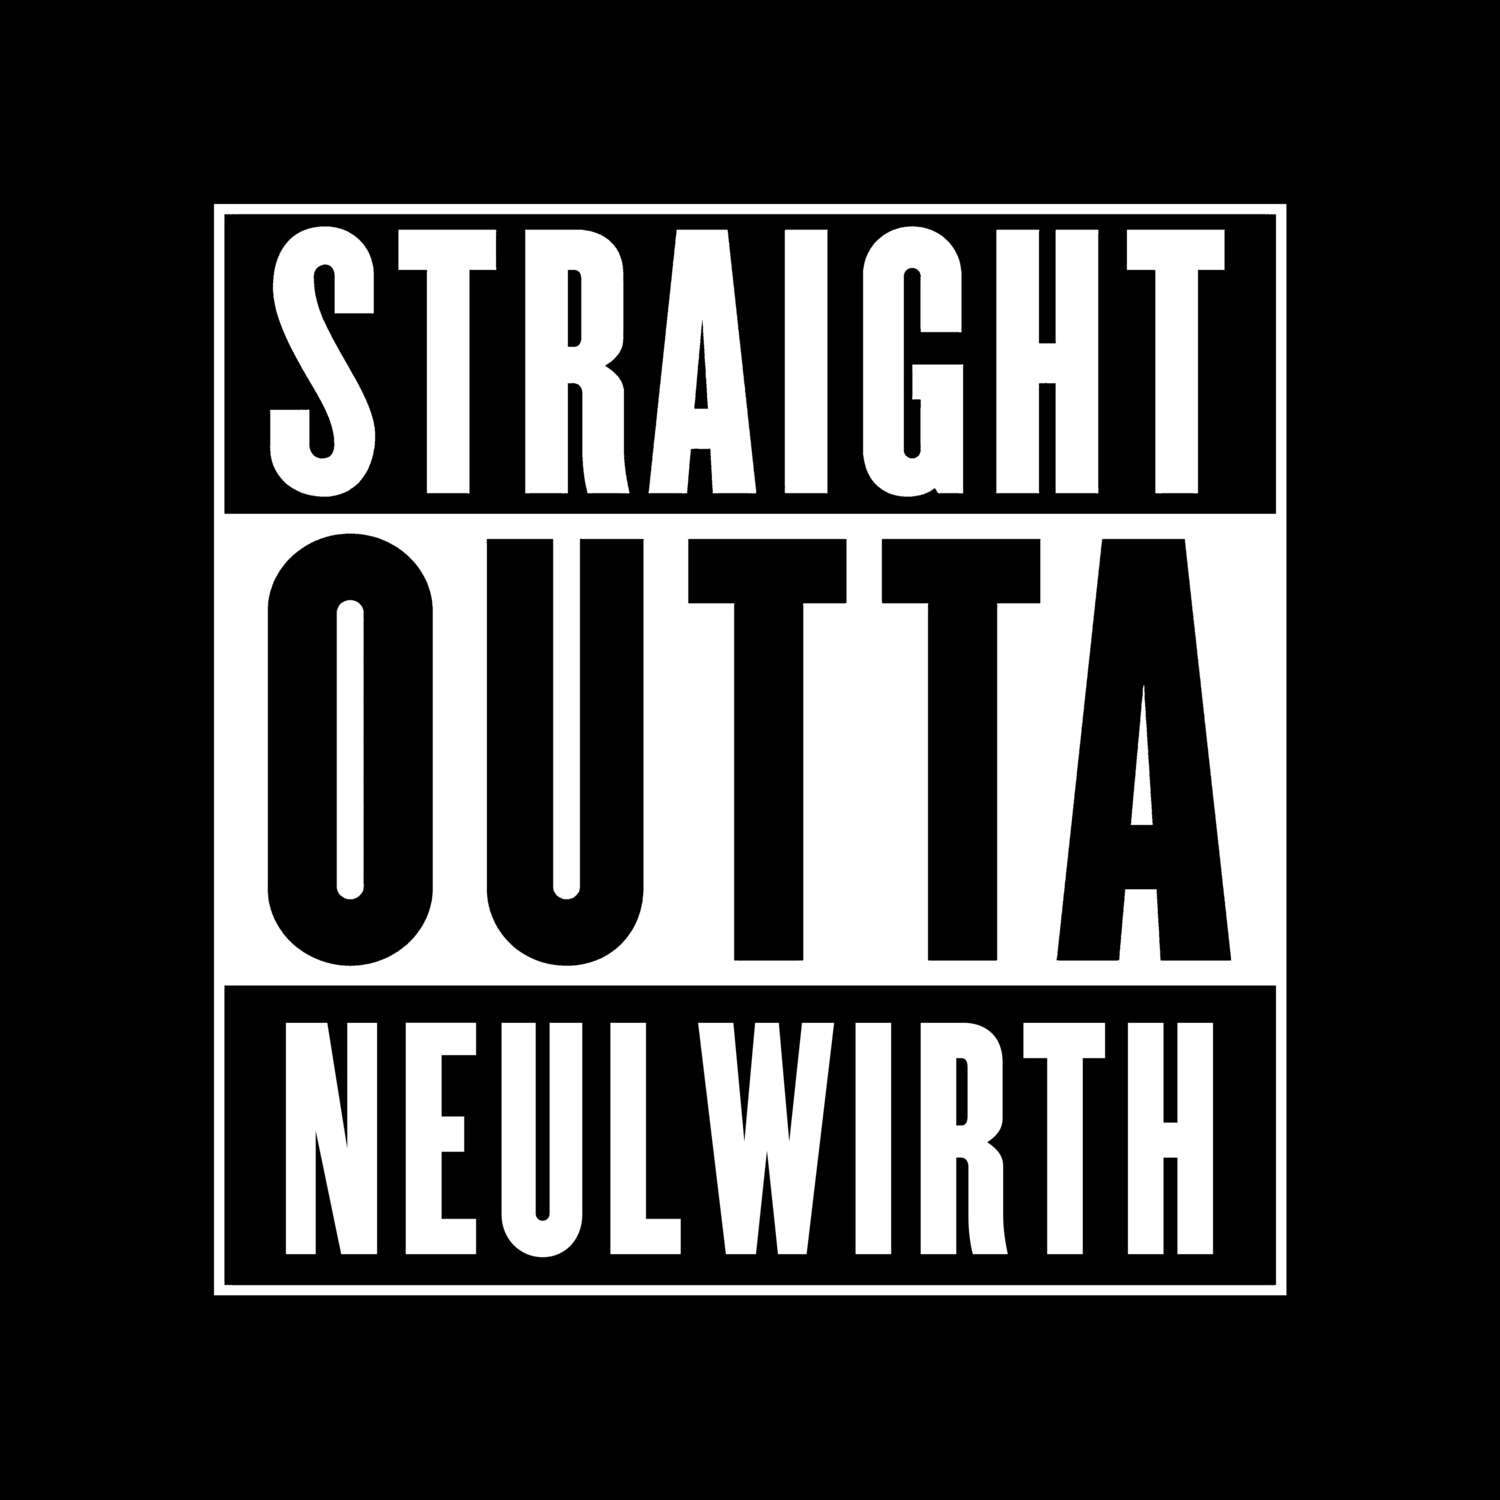 Neulwirth T-Shirt »Straight Outta«